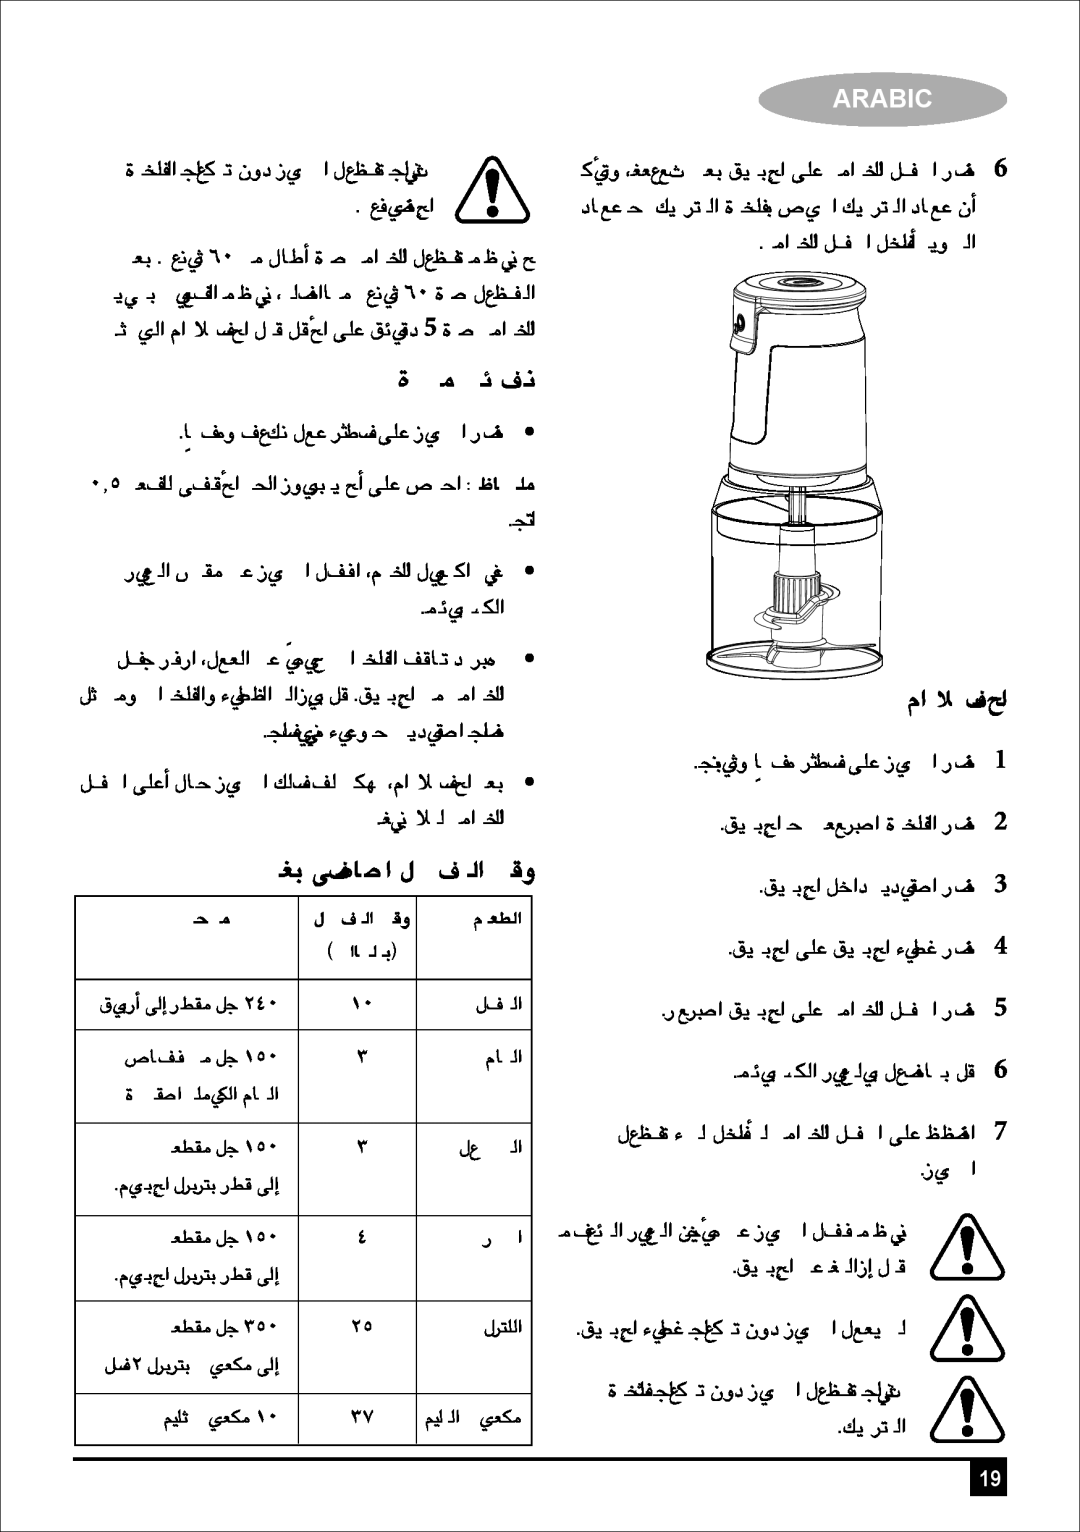 Black & Decker FC300 manual Ió«Øe íFÉüf, ΩGóîàS’G, ¬H ≈UƒŸG π«¨ûàdG âbh, Arabic, äÉ¶MÓe 